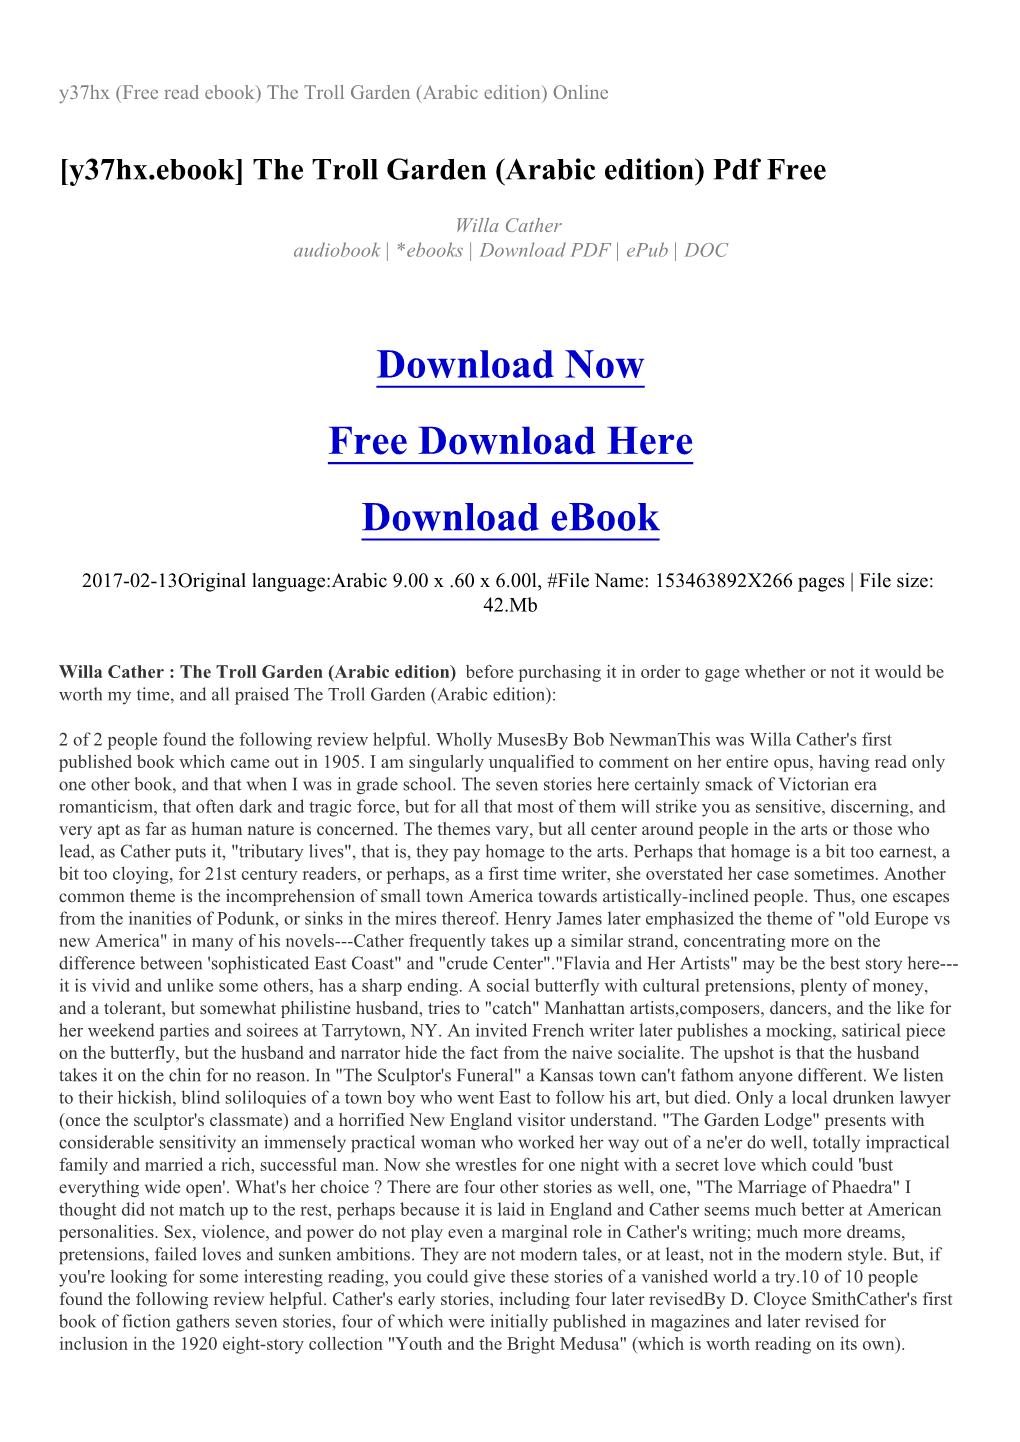 Y37hx (Free Read Ebook) the Troll Garden (Arabic Edition) Online